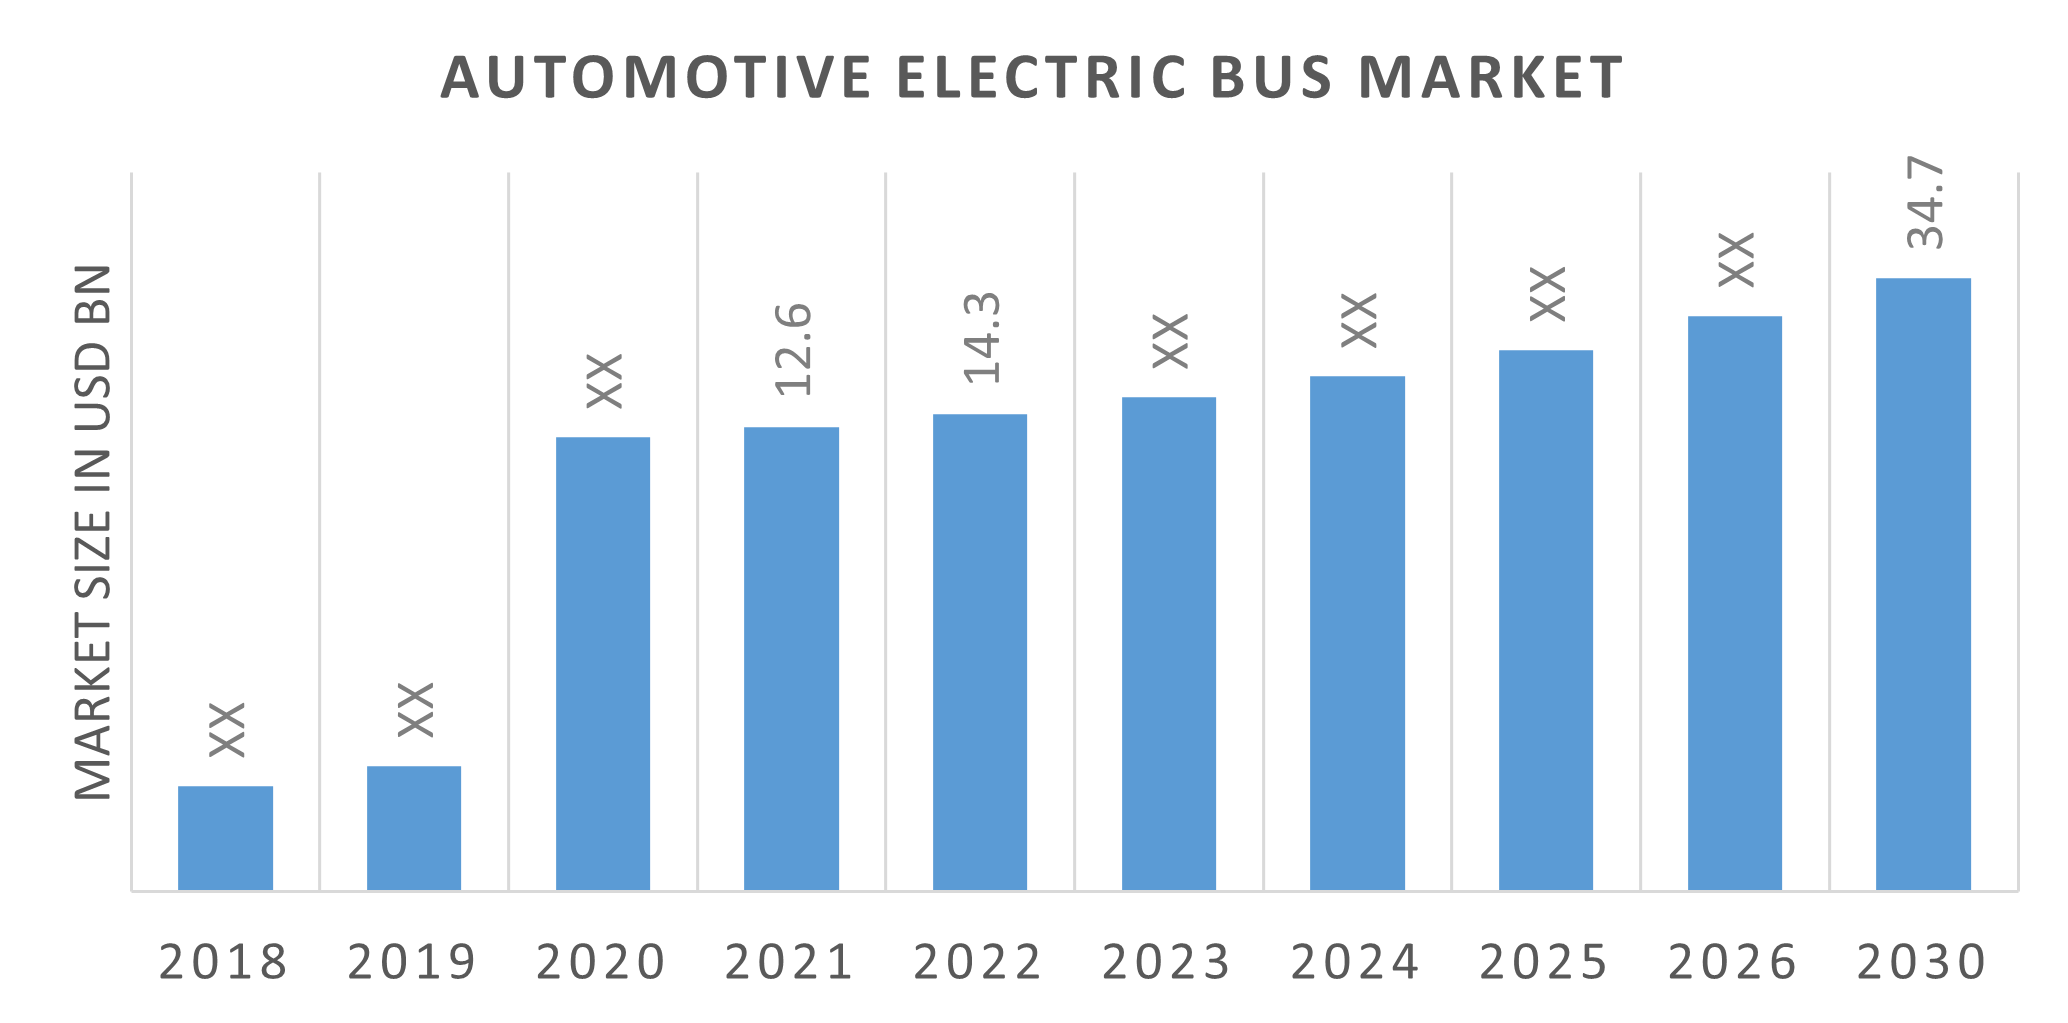 Global Automotive Electric Bus Market